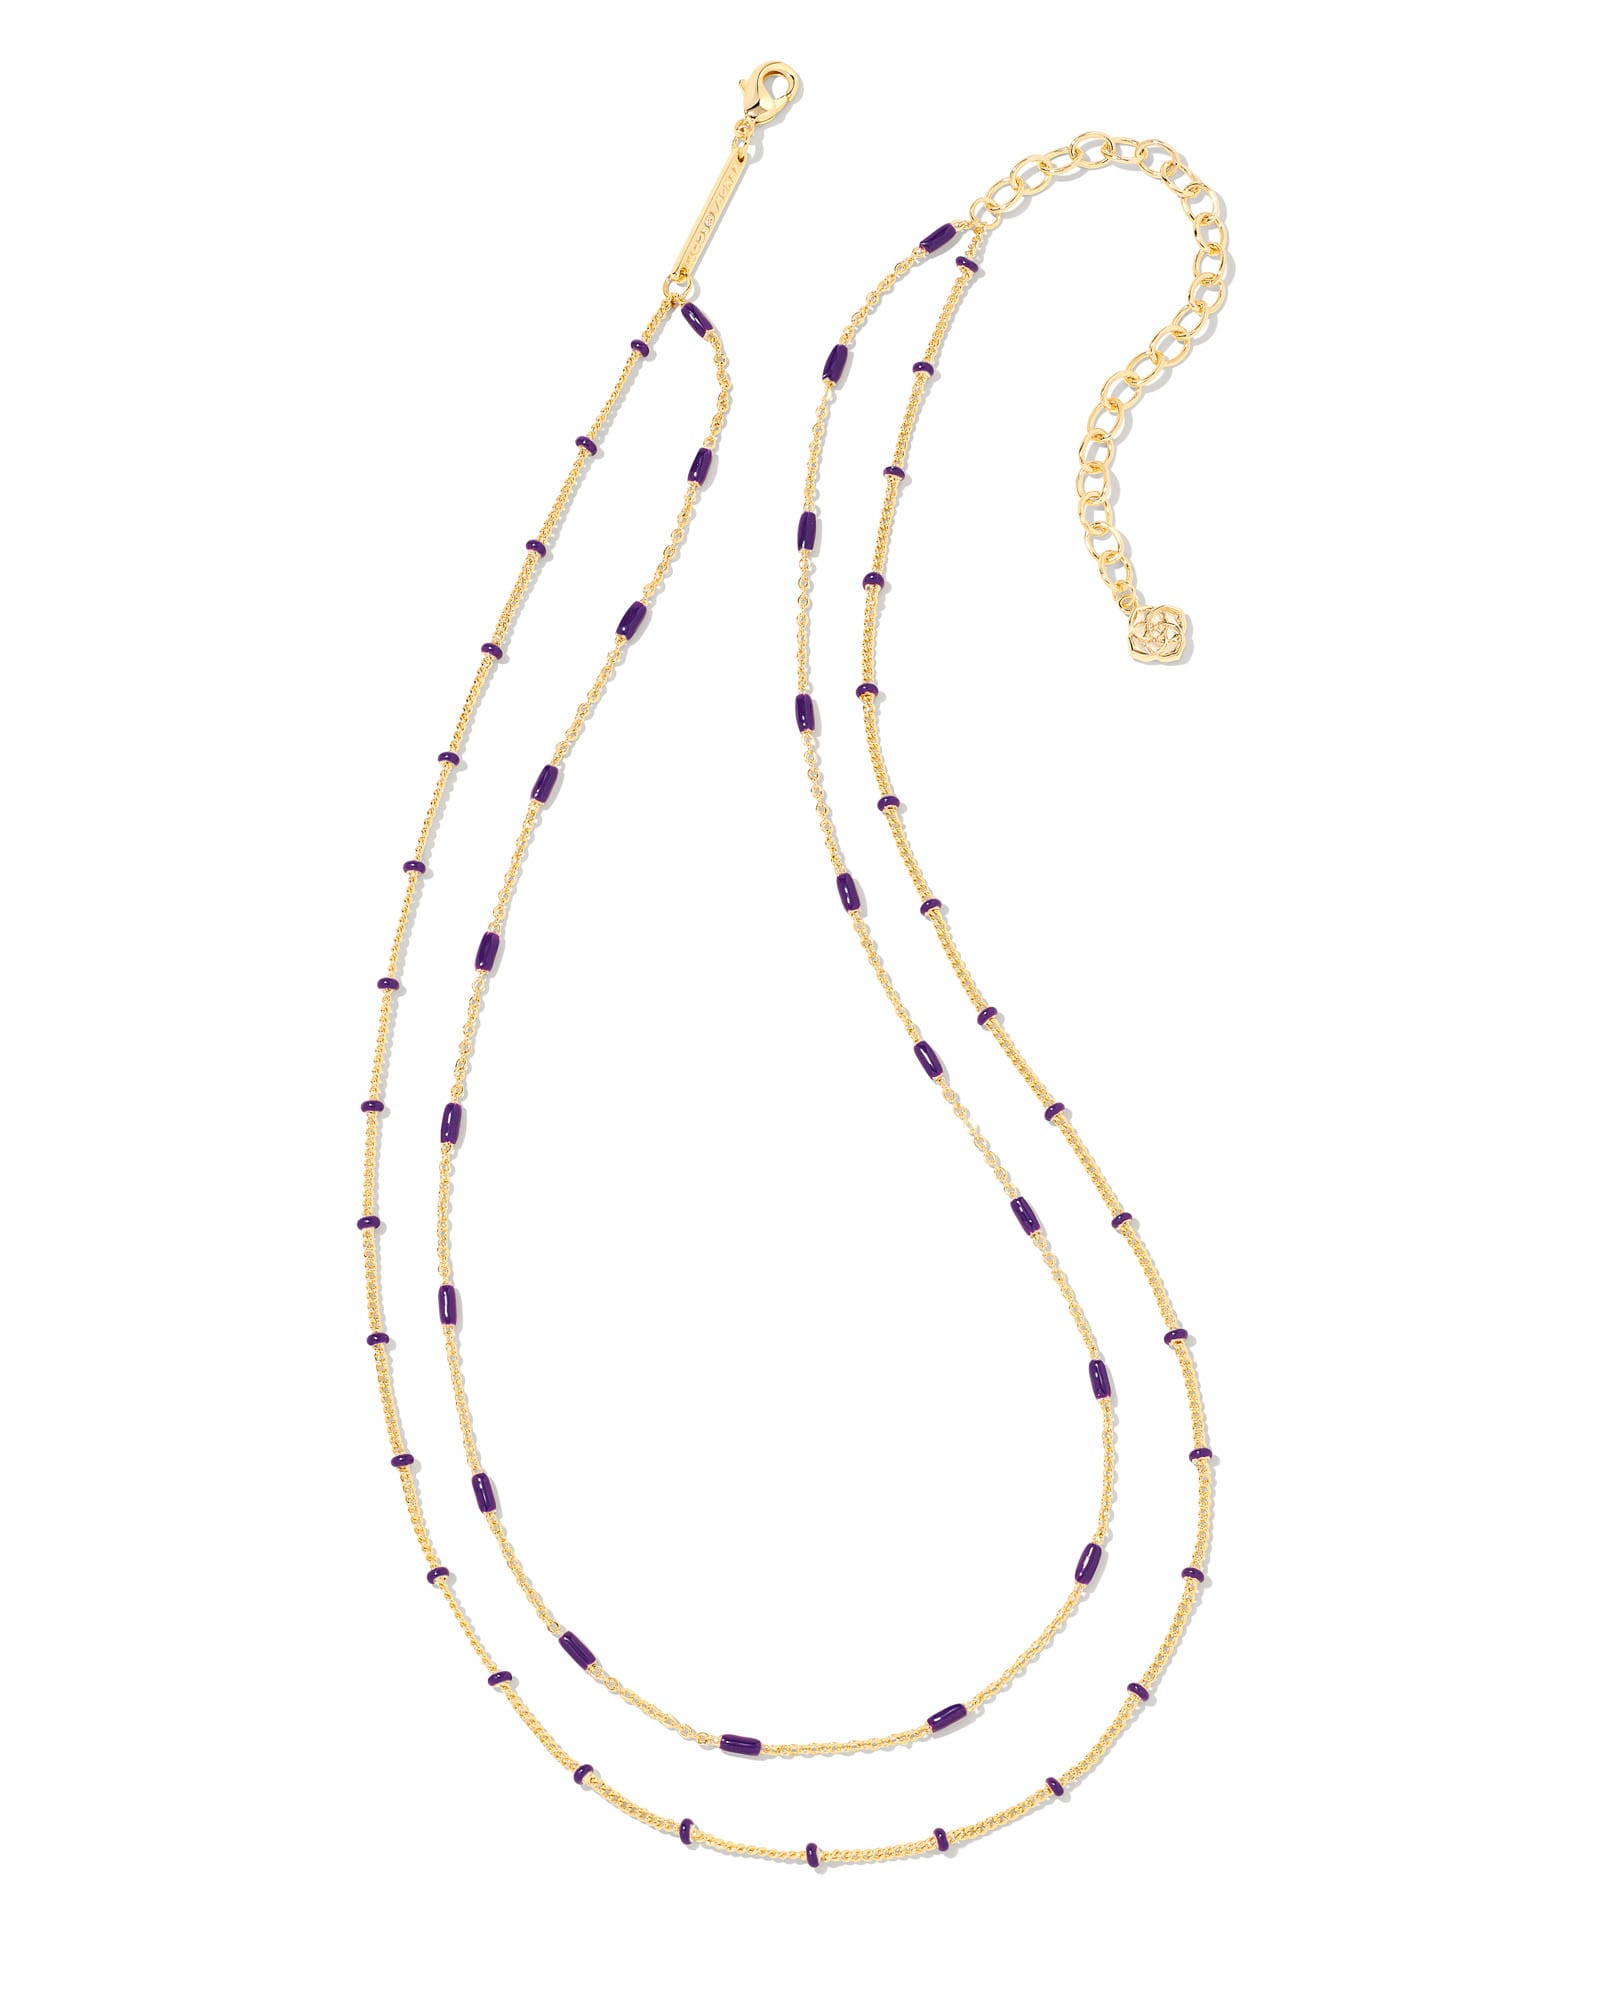 Kendra Scott Dottie Gold Multi Strand Necklace in Amethyst | Enamel